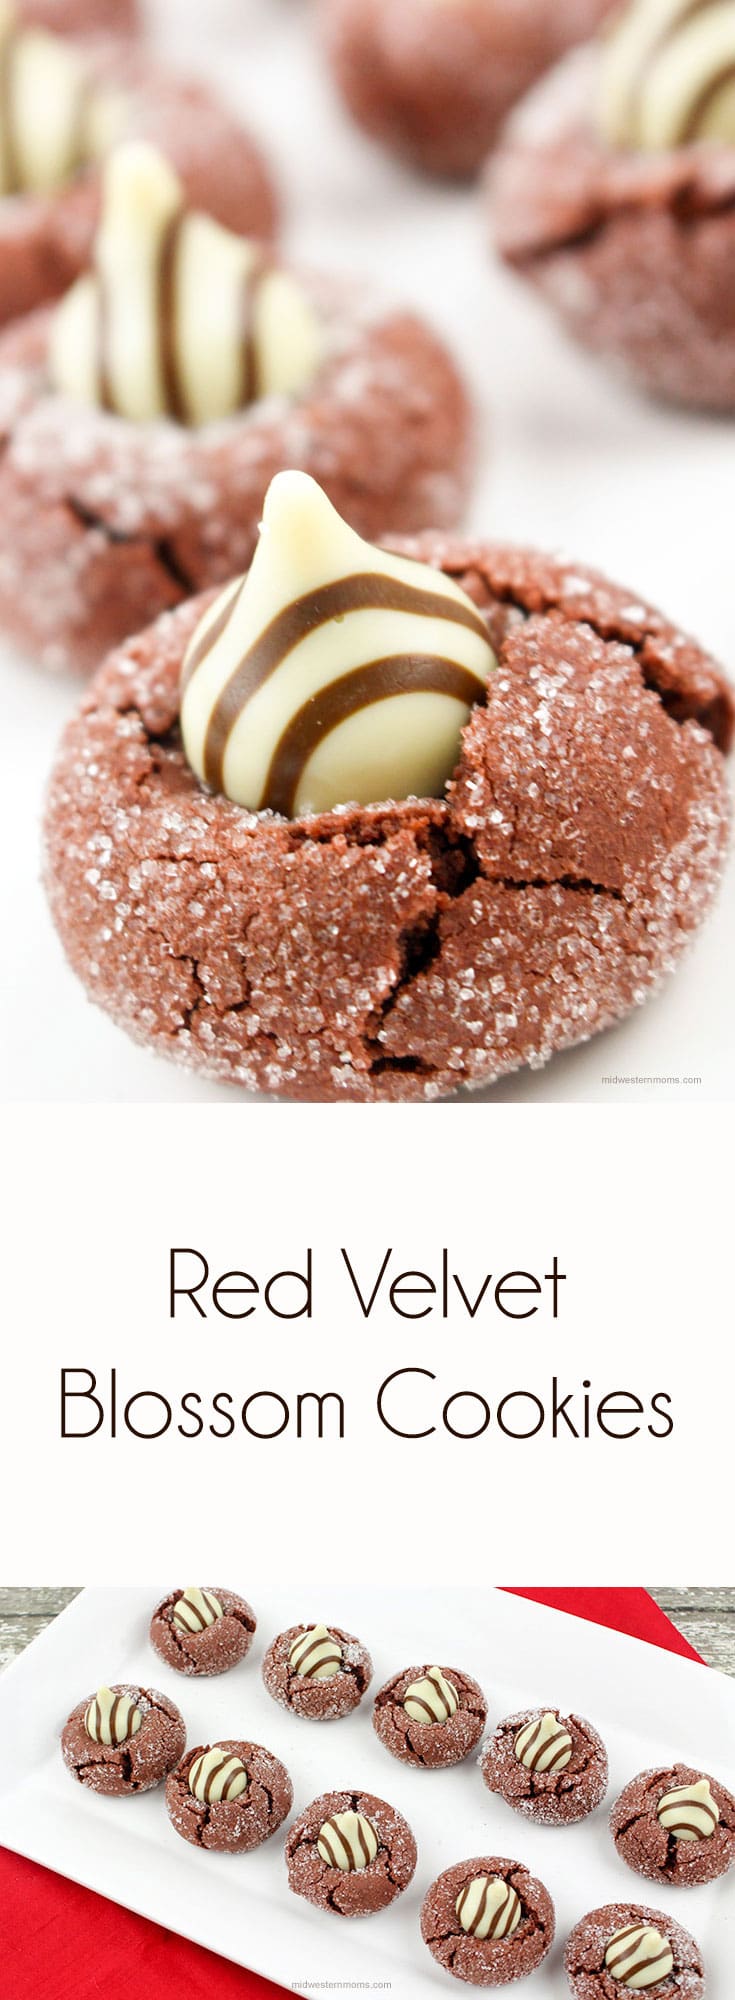 Red Velvet Blossom Cookies